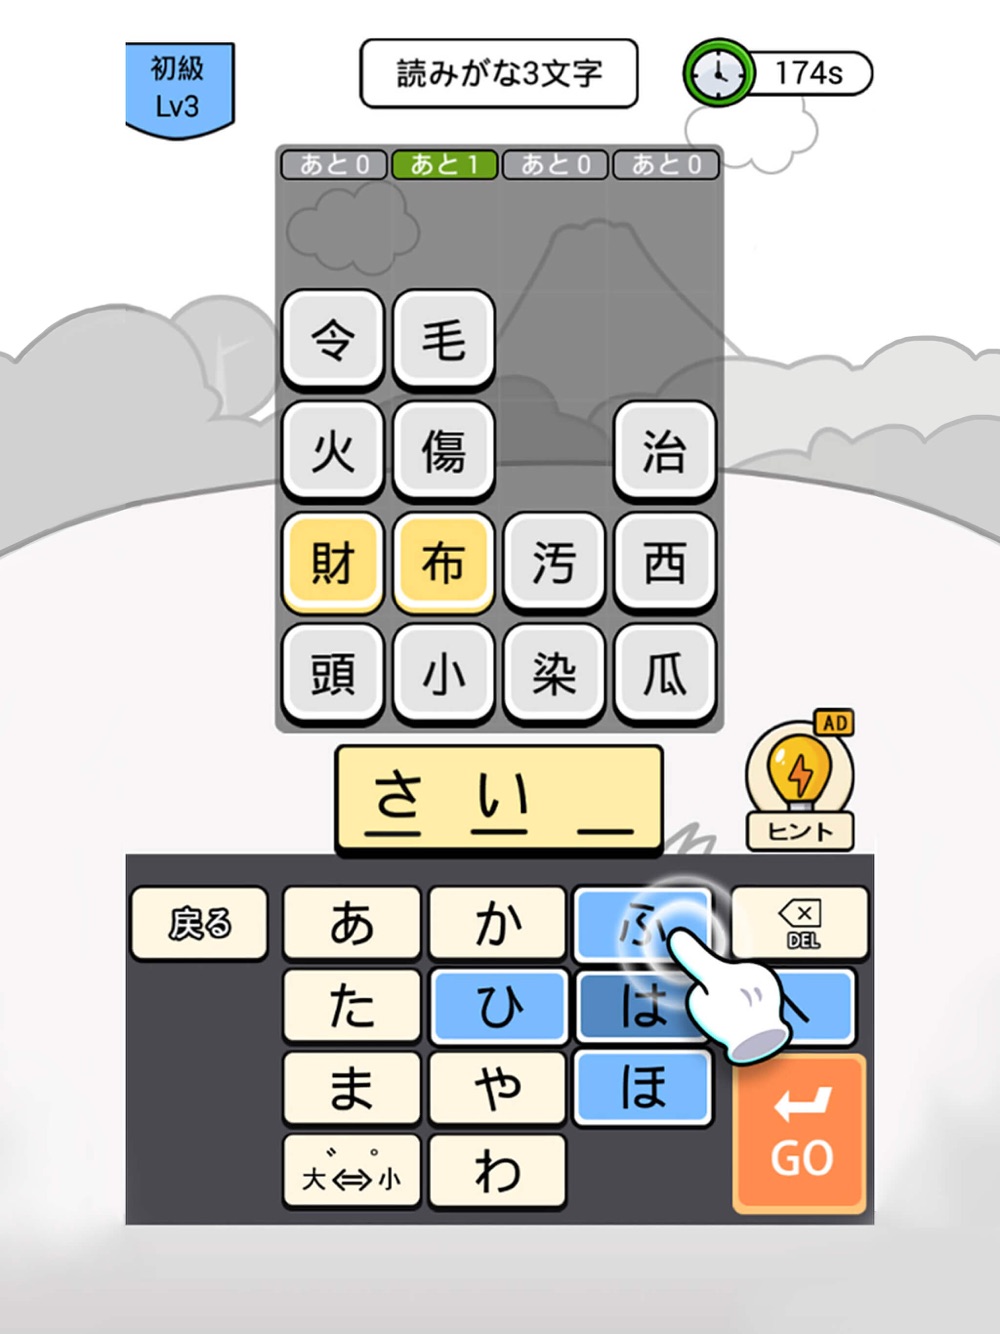 漢字クイズ 単語パズル 面白い言葉遊び Free Download App For Iphone Steprimo Com